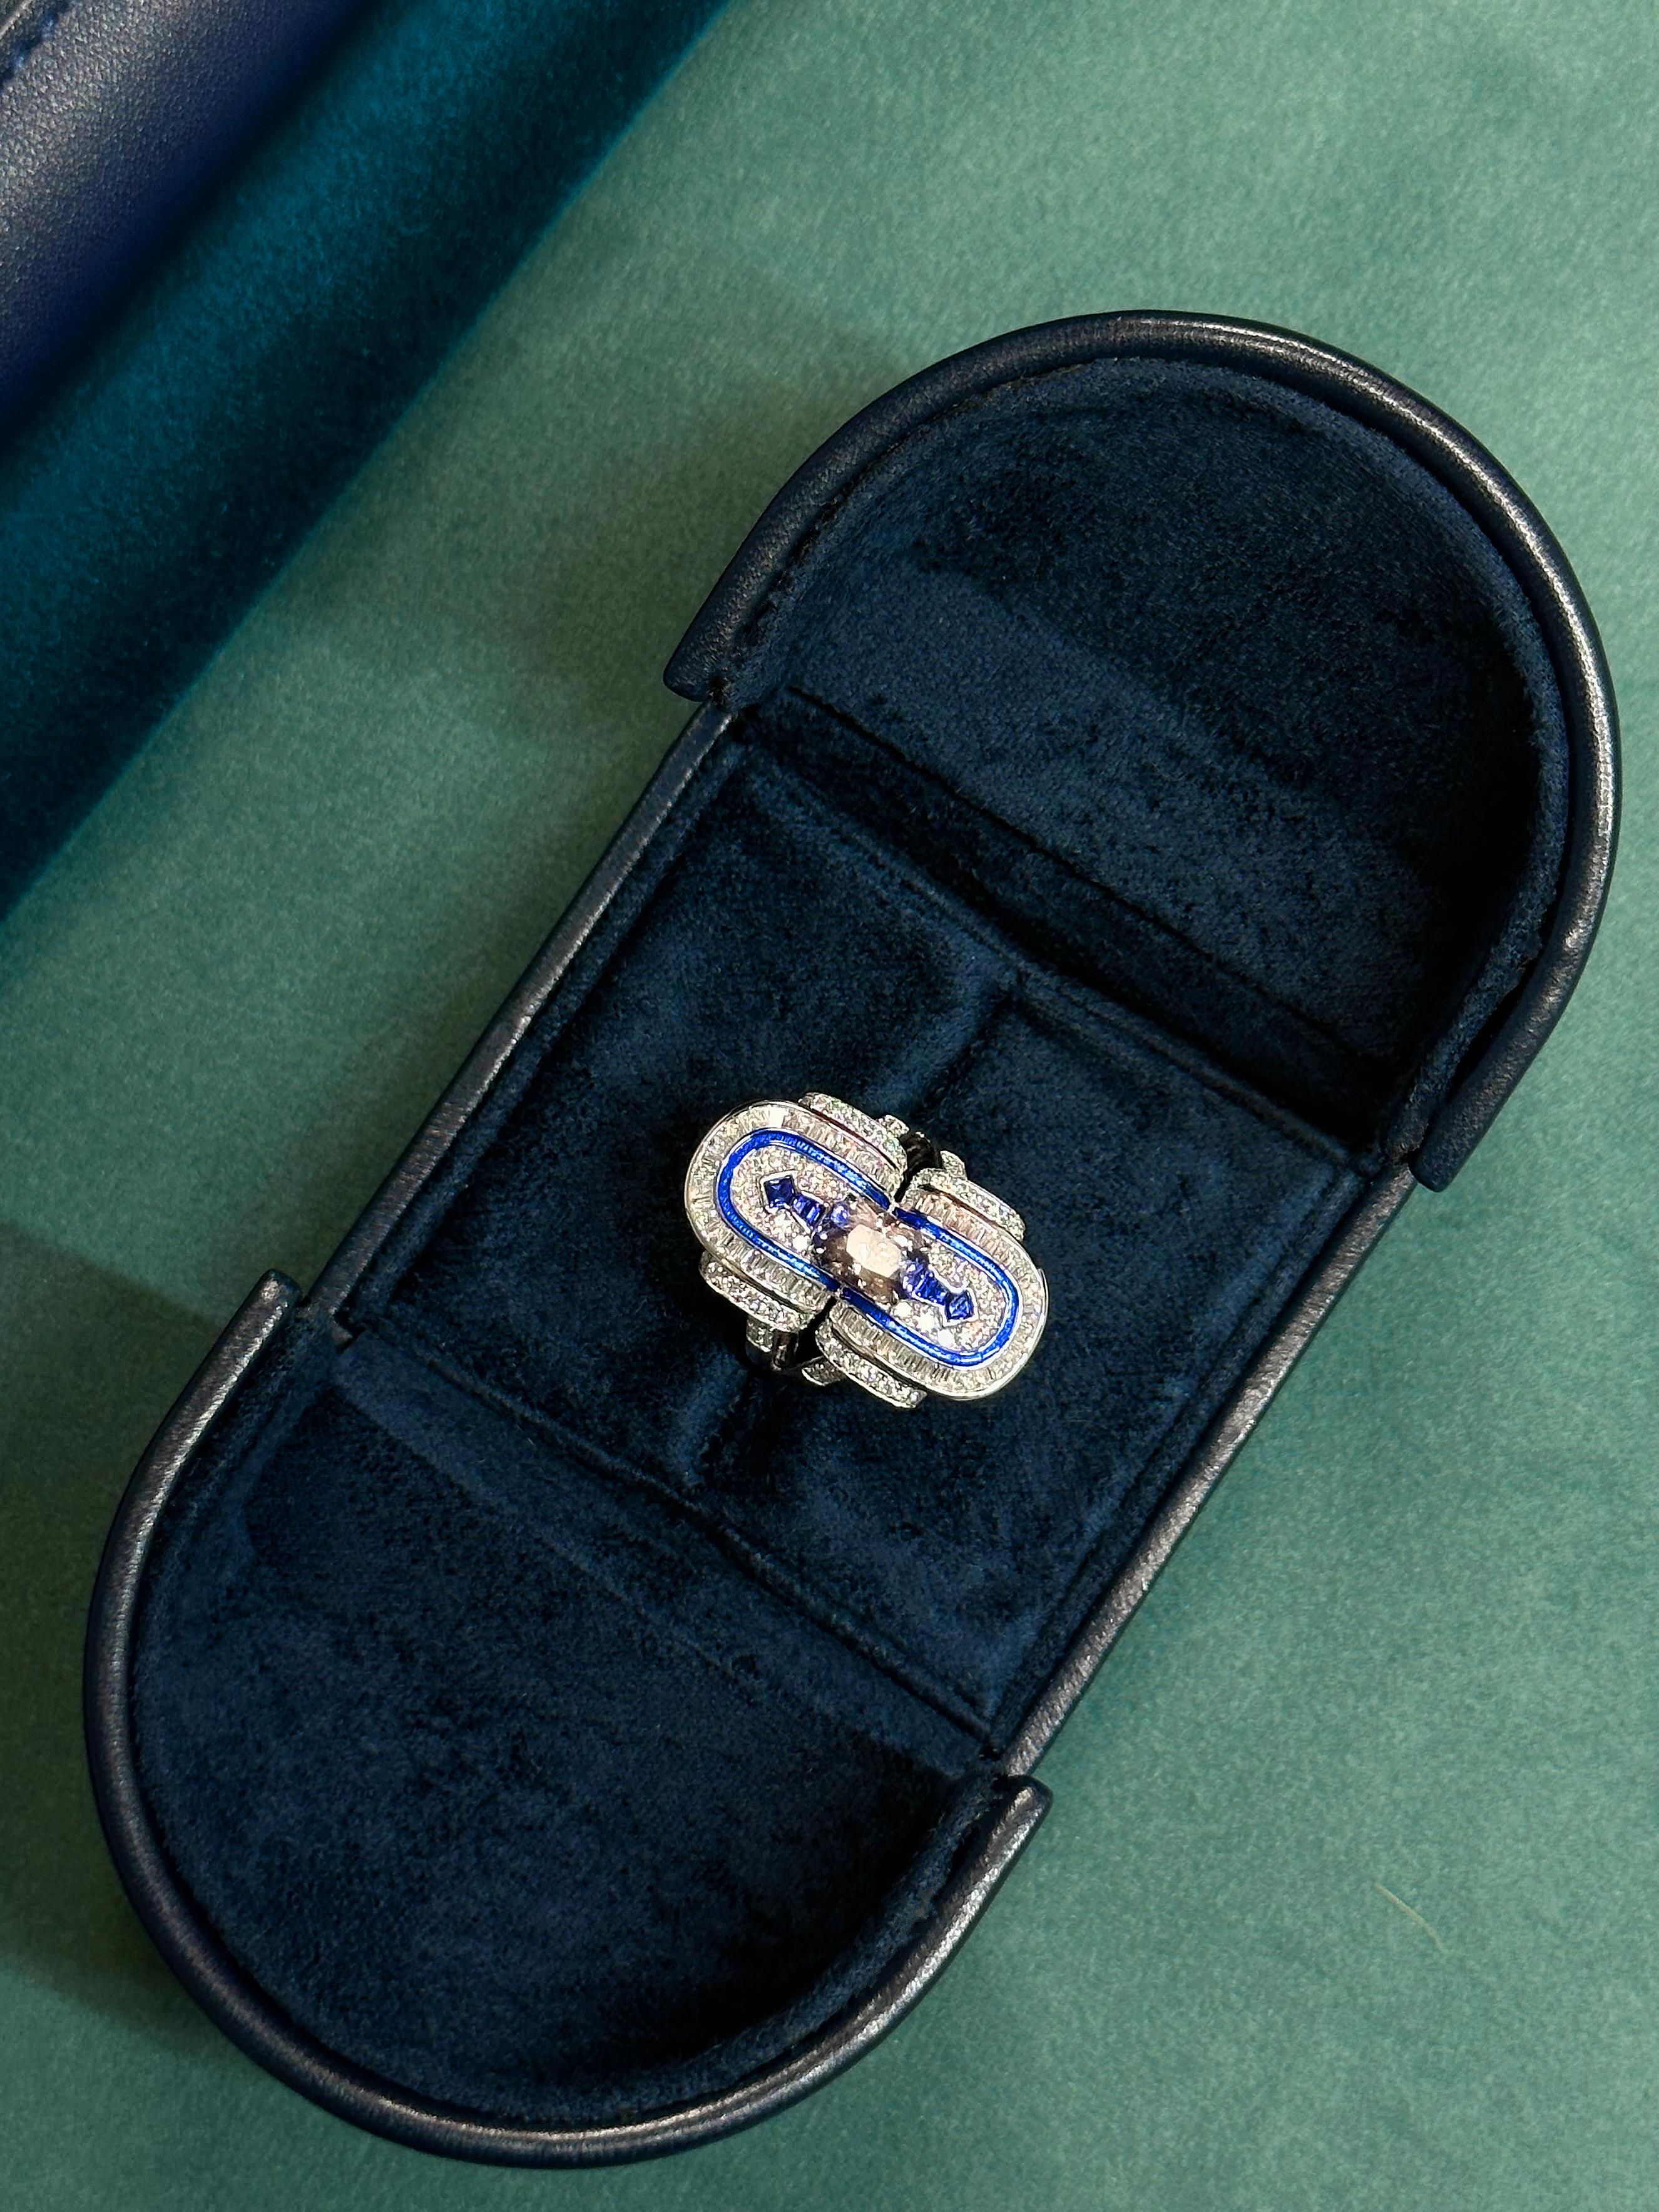 Auf Bestellung ab $5.000! Wählen Sie Ihren Edelstein, um Ihren Ring individuell zu gestalten 

Das schicke geometrische Design glänzt mit leuchtenden Diamanten und wird von satten blauen Linien aus sorgfältig geschliffenen Saphiren und blauer